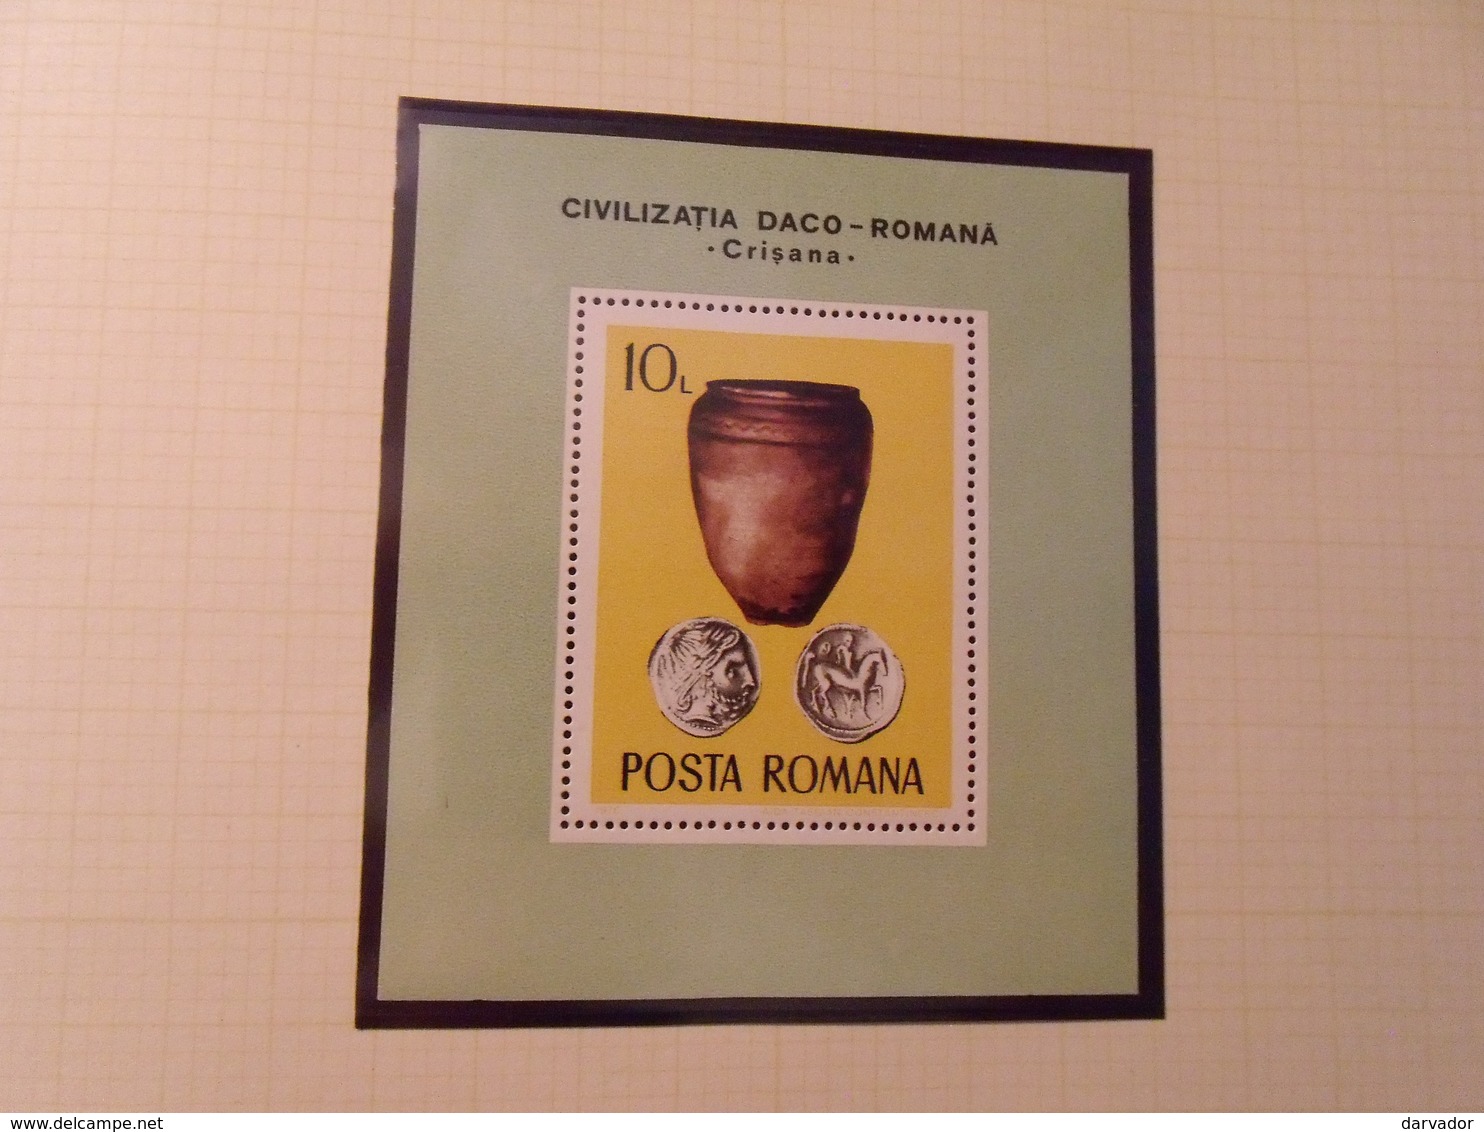 album FF  / Collection de timbres de ROUMANIE  tous neuf ** sans charnière MNH dont blocs  superbe